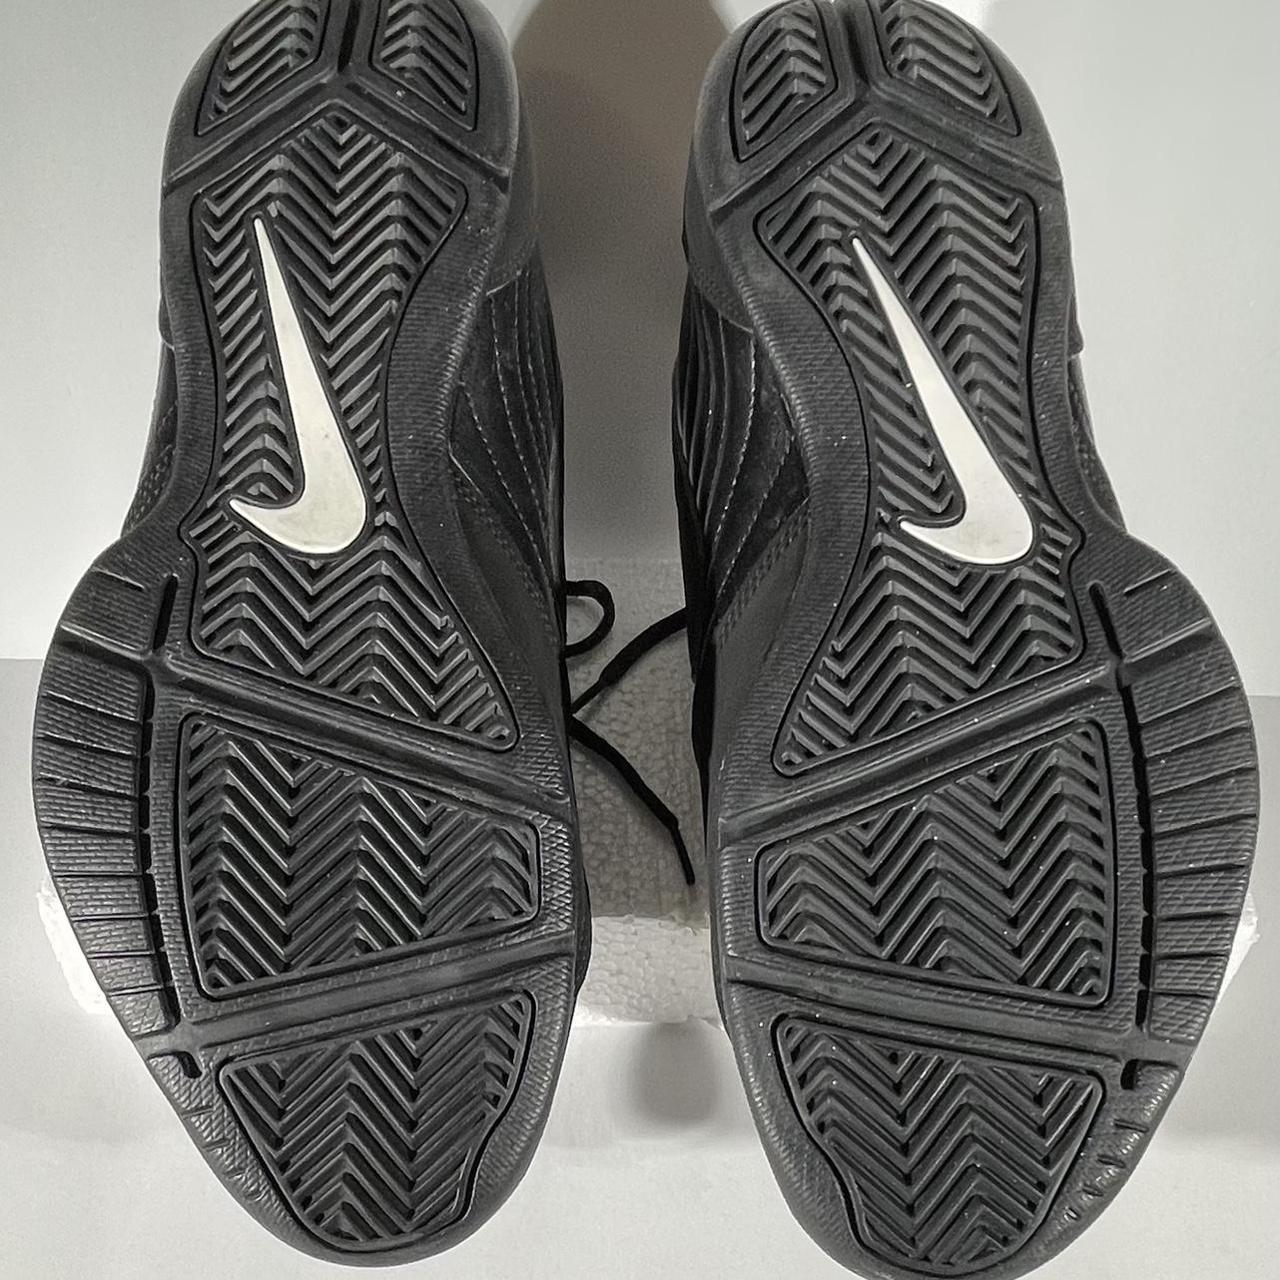 Nike Men’s Air Baseline Low Basketball Sneakers,... - Depop